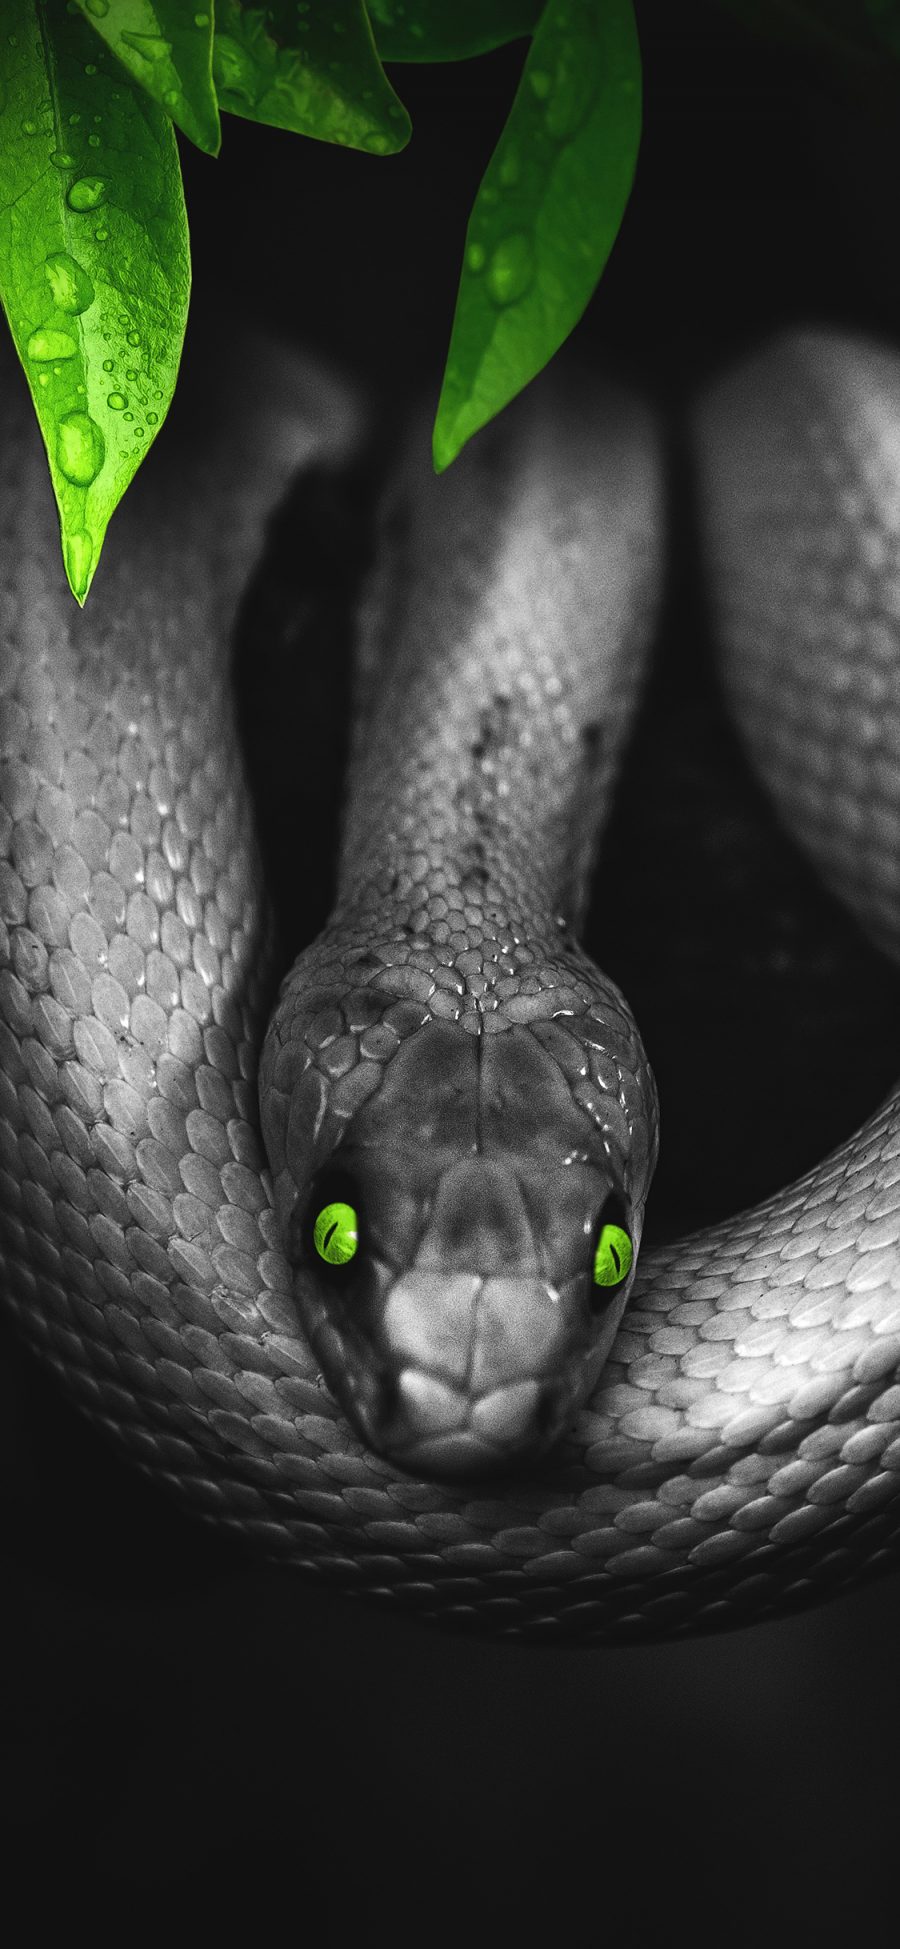 [2436×1125]蛇 猛兽 凶猛 黑 叶子 苹果手机壁纸图片